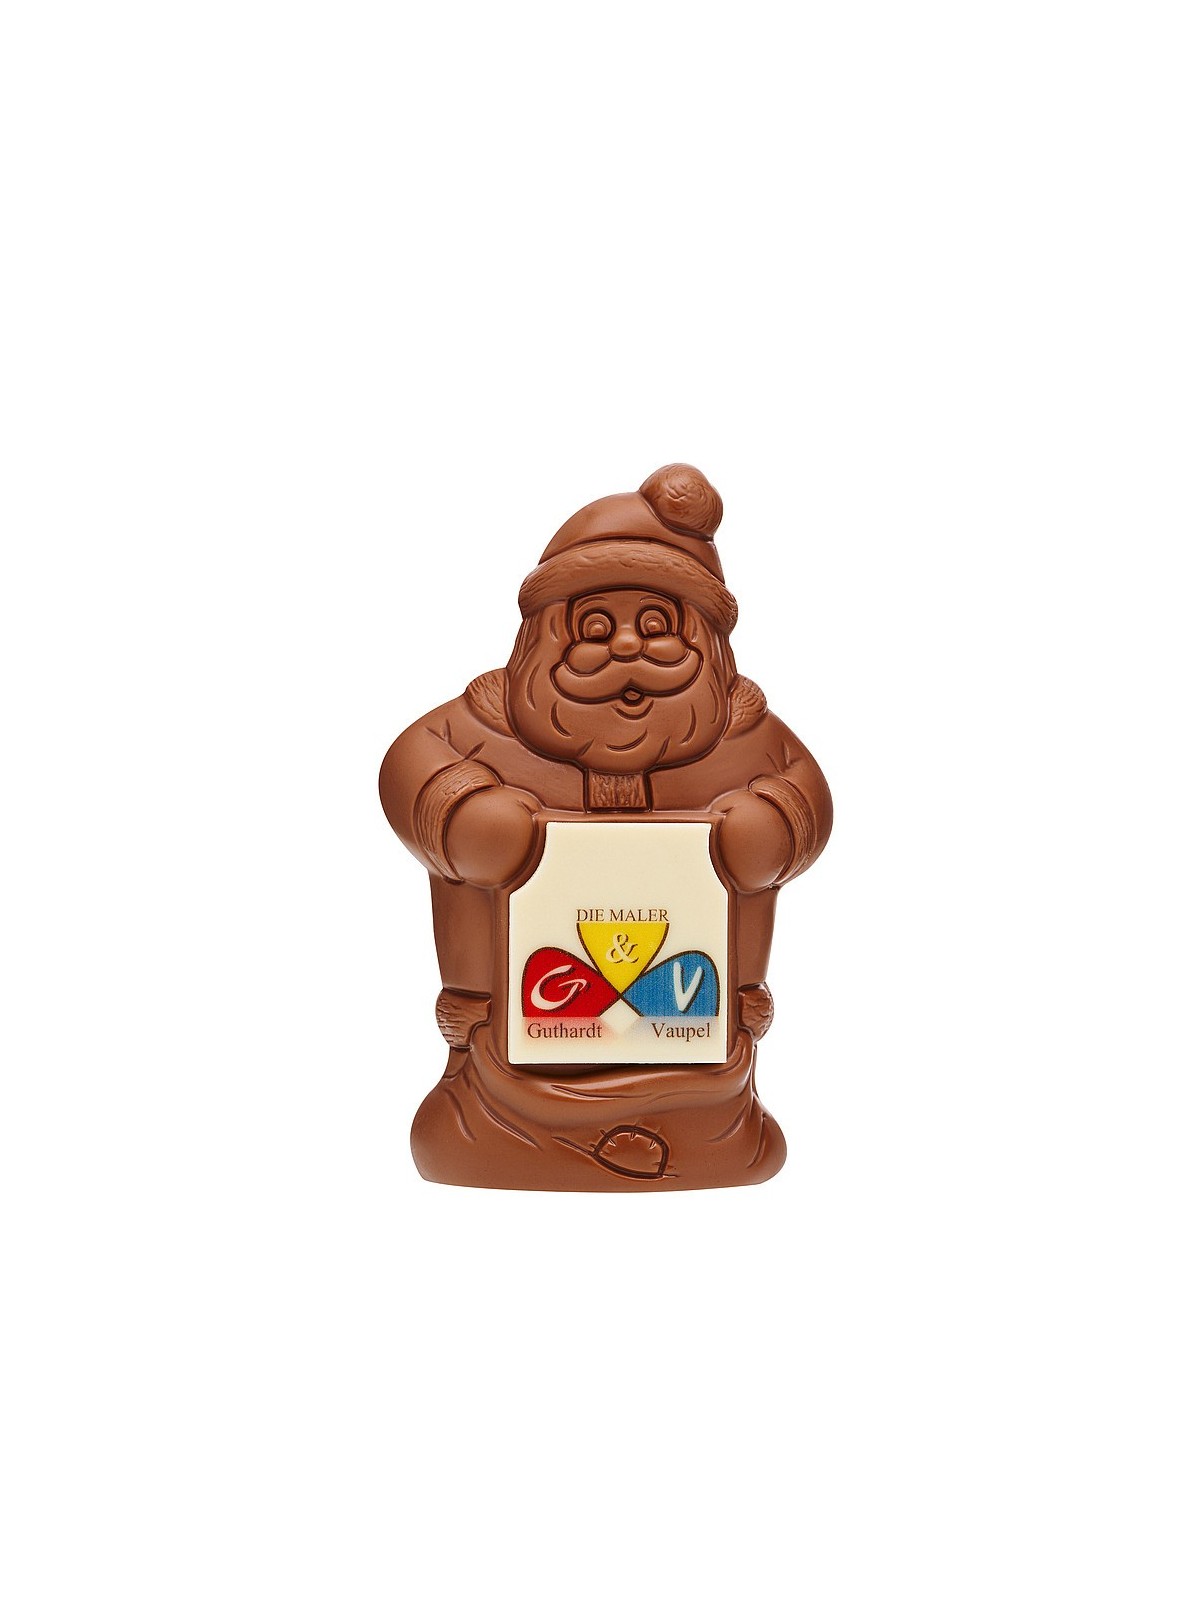 64-107 Père Noël avec pancarte en chocolat  personnalisé